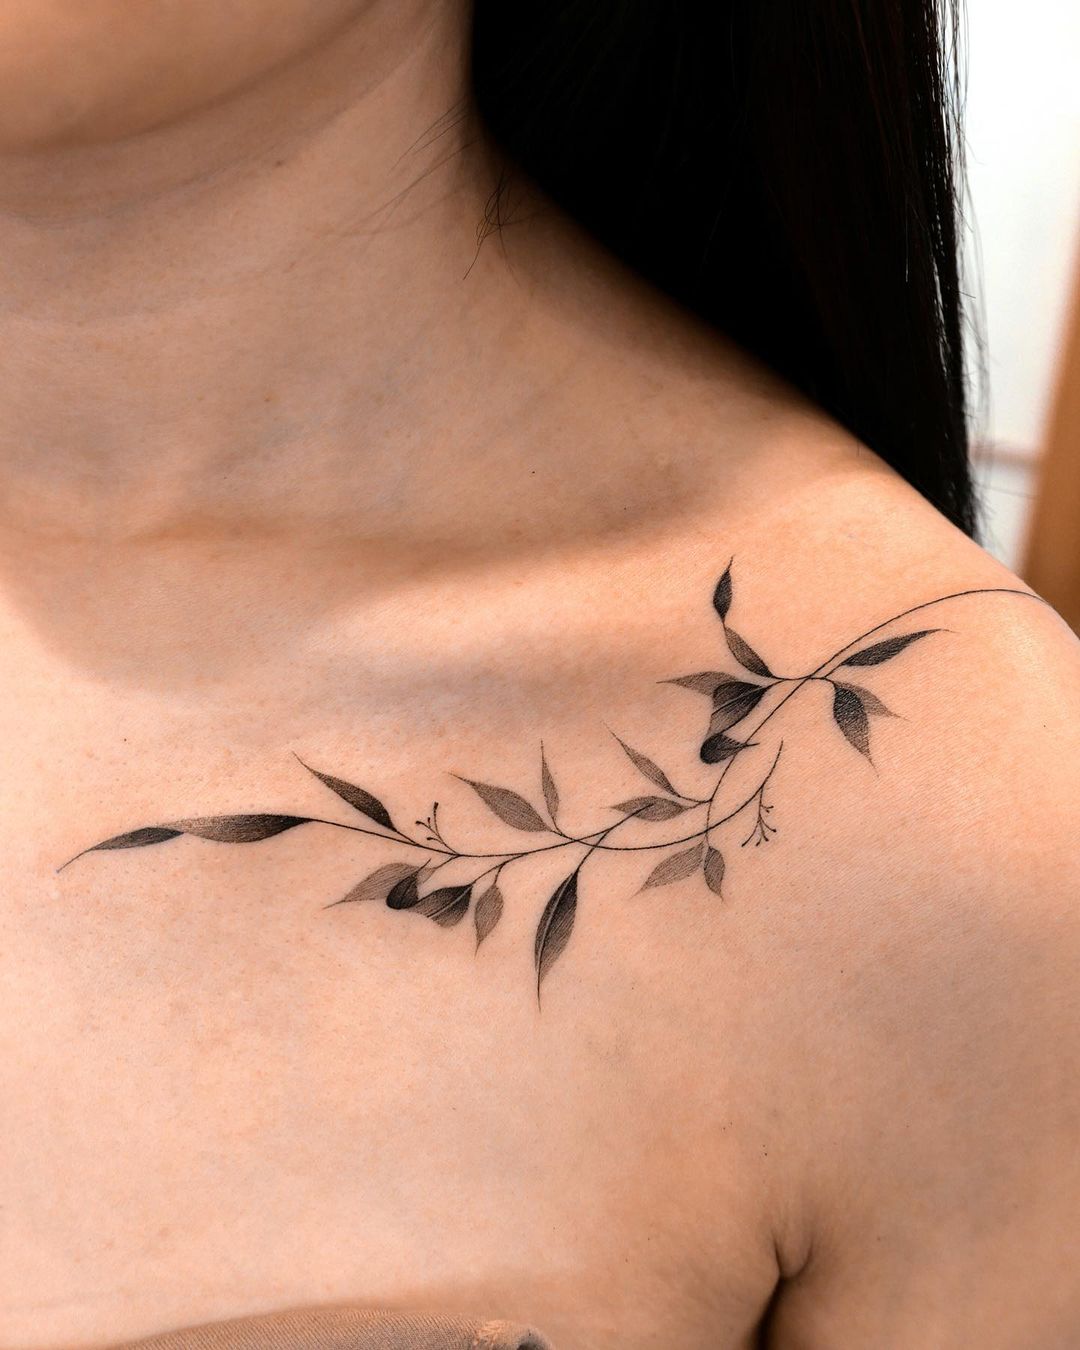 Leaf tattoo ideas by tattooist kam4